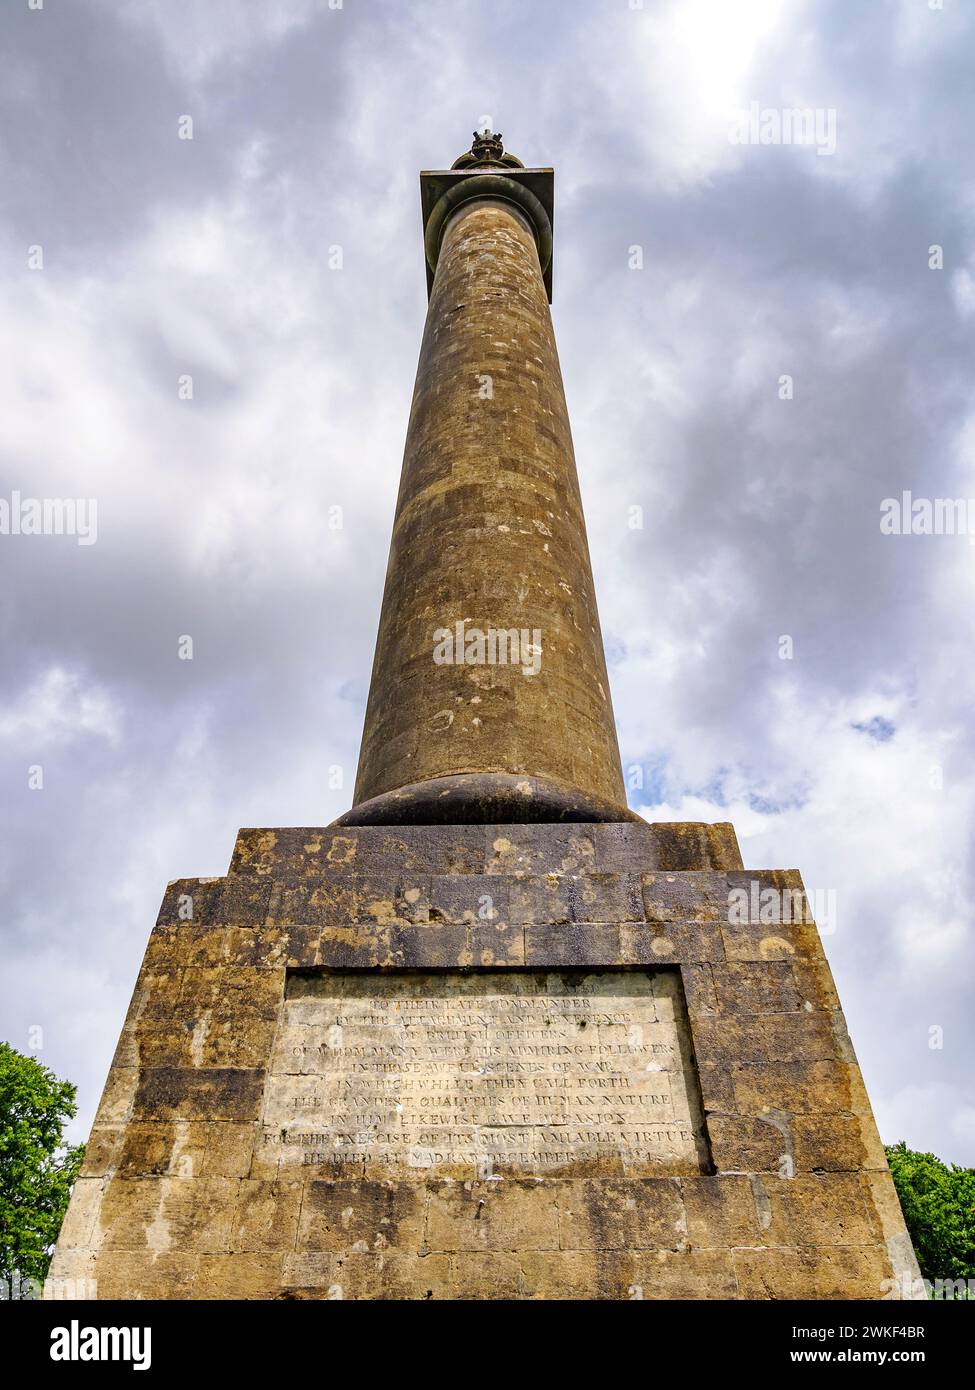 Monumento commemorativo all'ammiraglio Hood dedicato a Sir Samuel Hood, una colonna dell'ordine toscano sulle Polden Hills vicino a Compton Dundon nel Somerset, Regno Unito Foto Stock